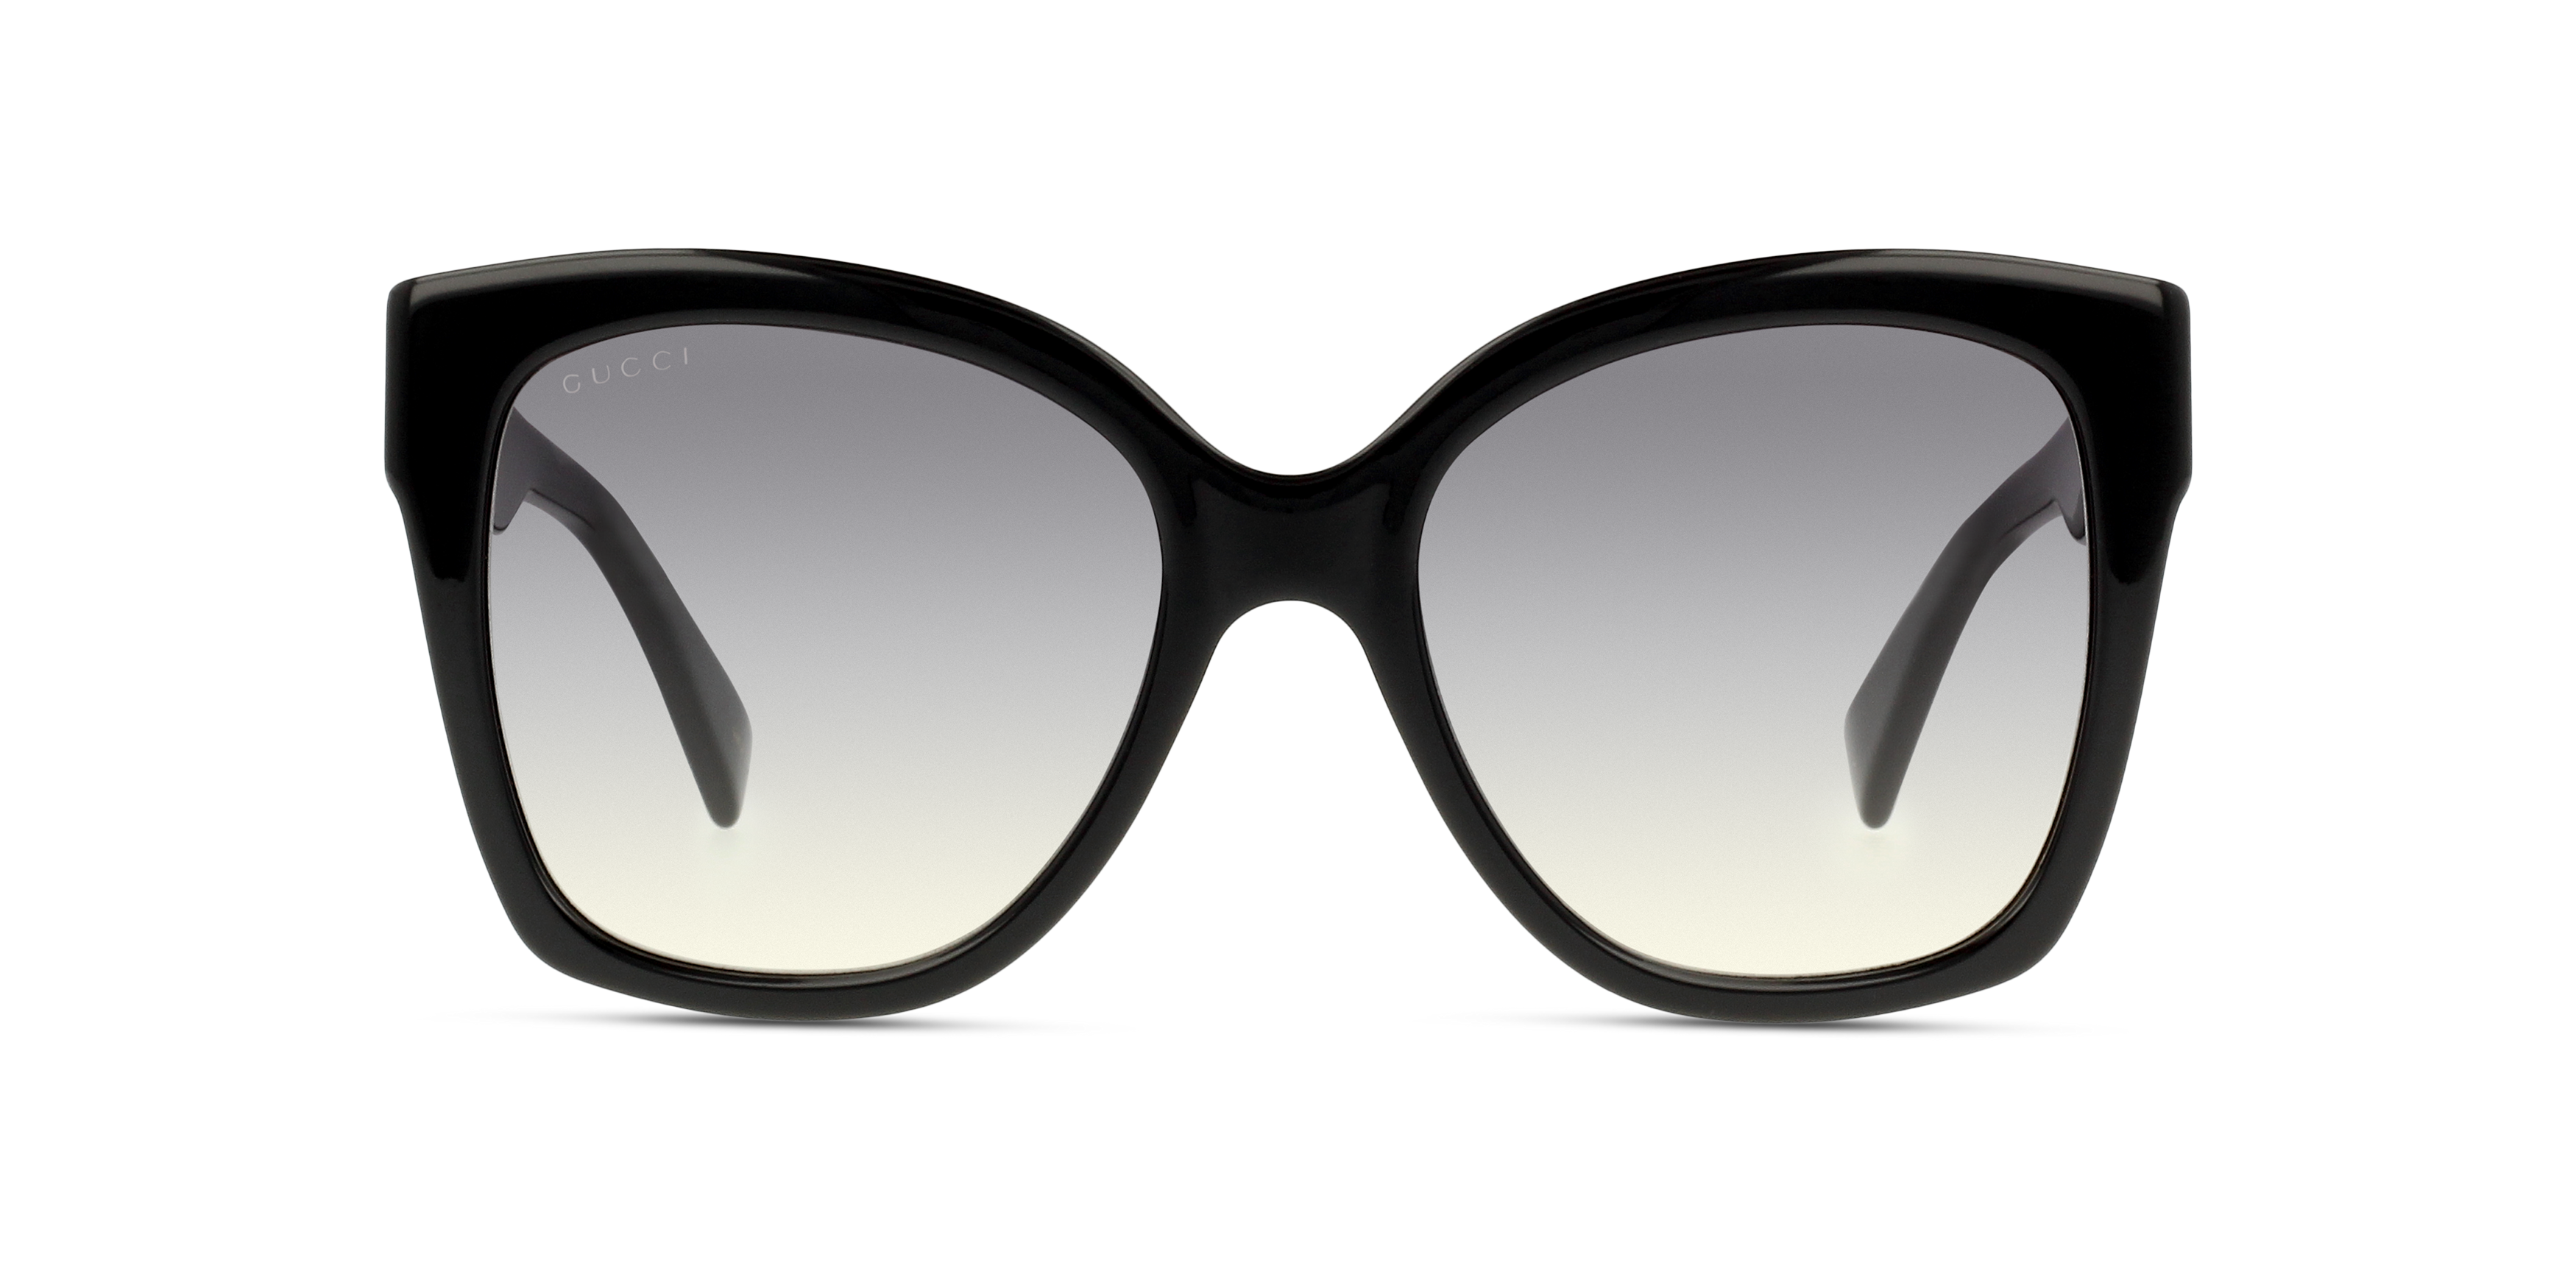 Gucci GG oversized square acetate sunglasses BLACK | Sunglasses